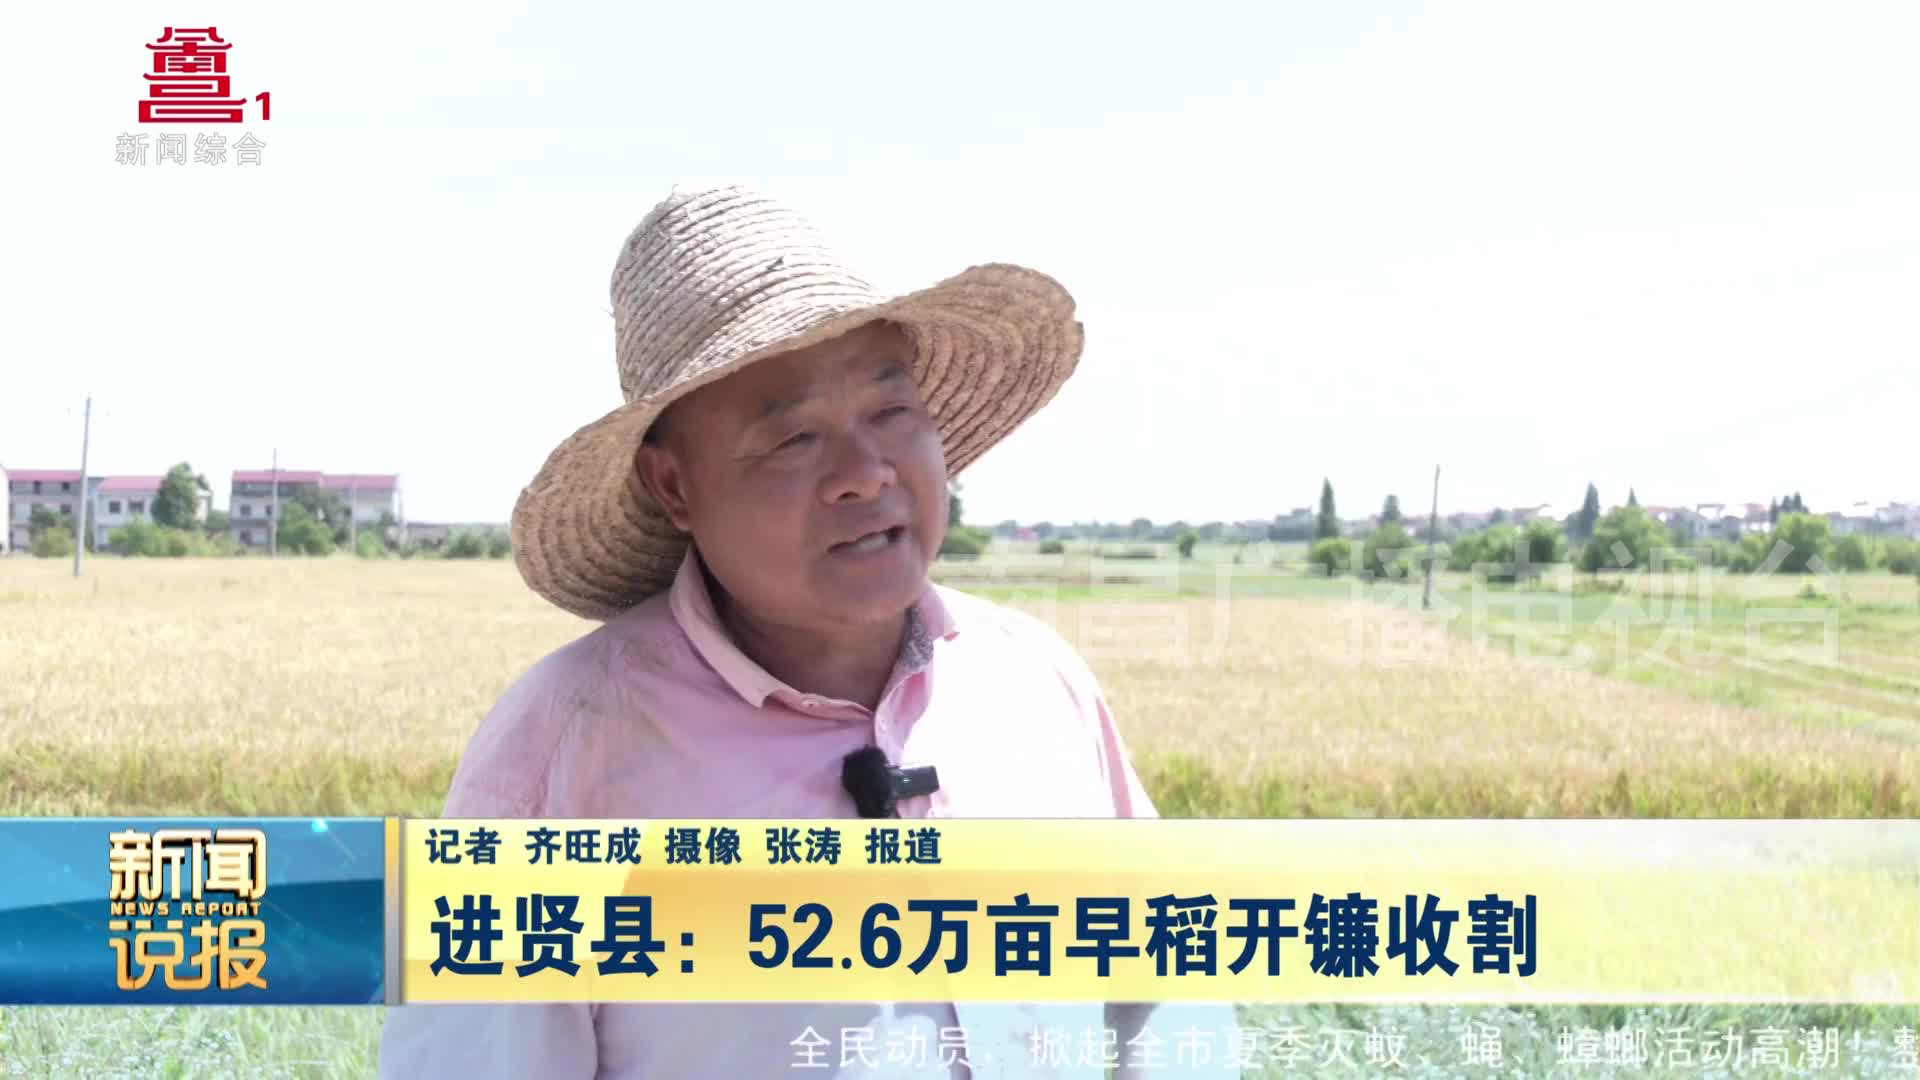 进贤县：52.6万亩早稻开镰收割